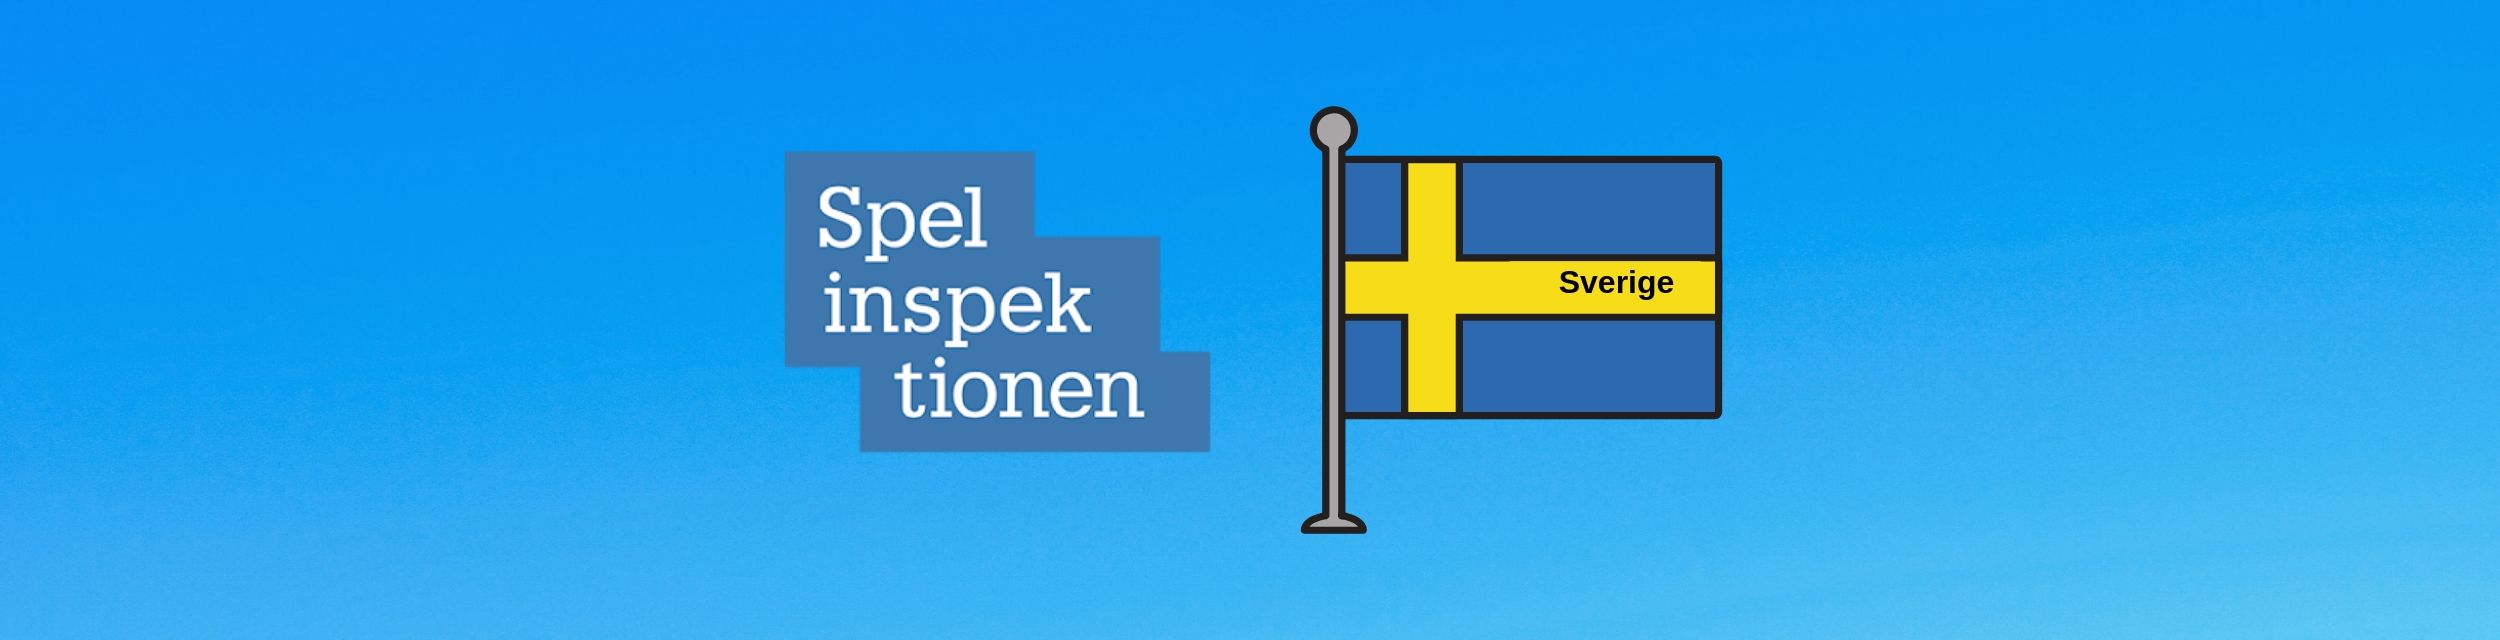 Spelinspektionens logga bredvid svensk flagga med ordet Sverige inuti